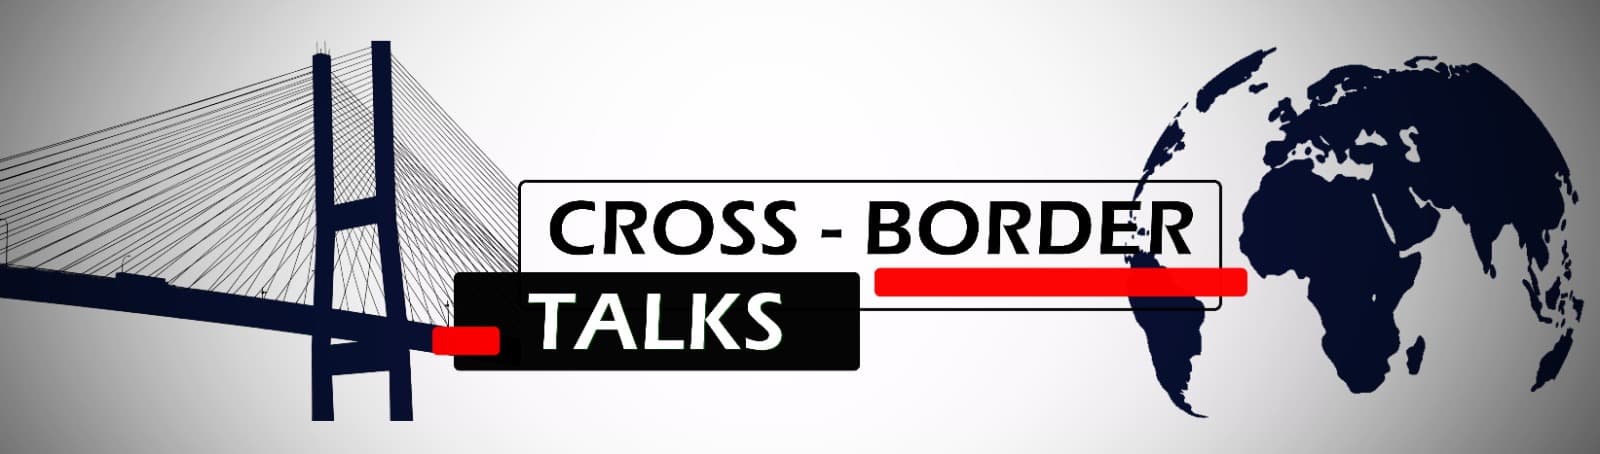 Cross-border Talks